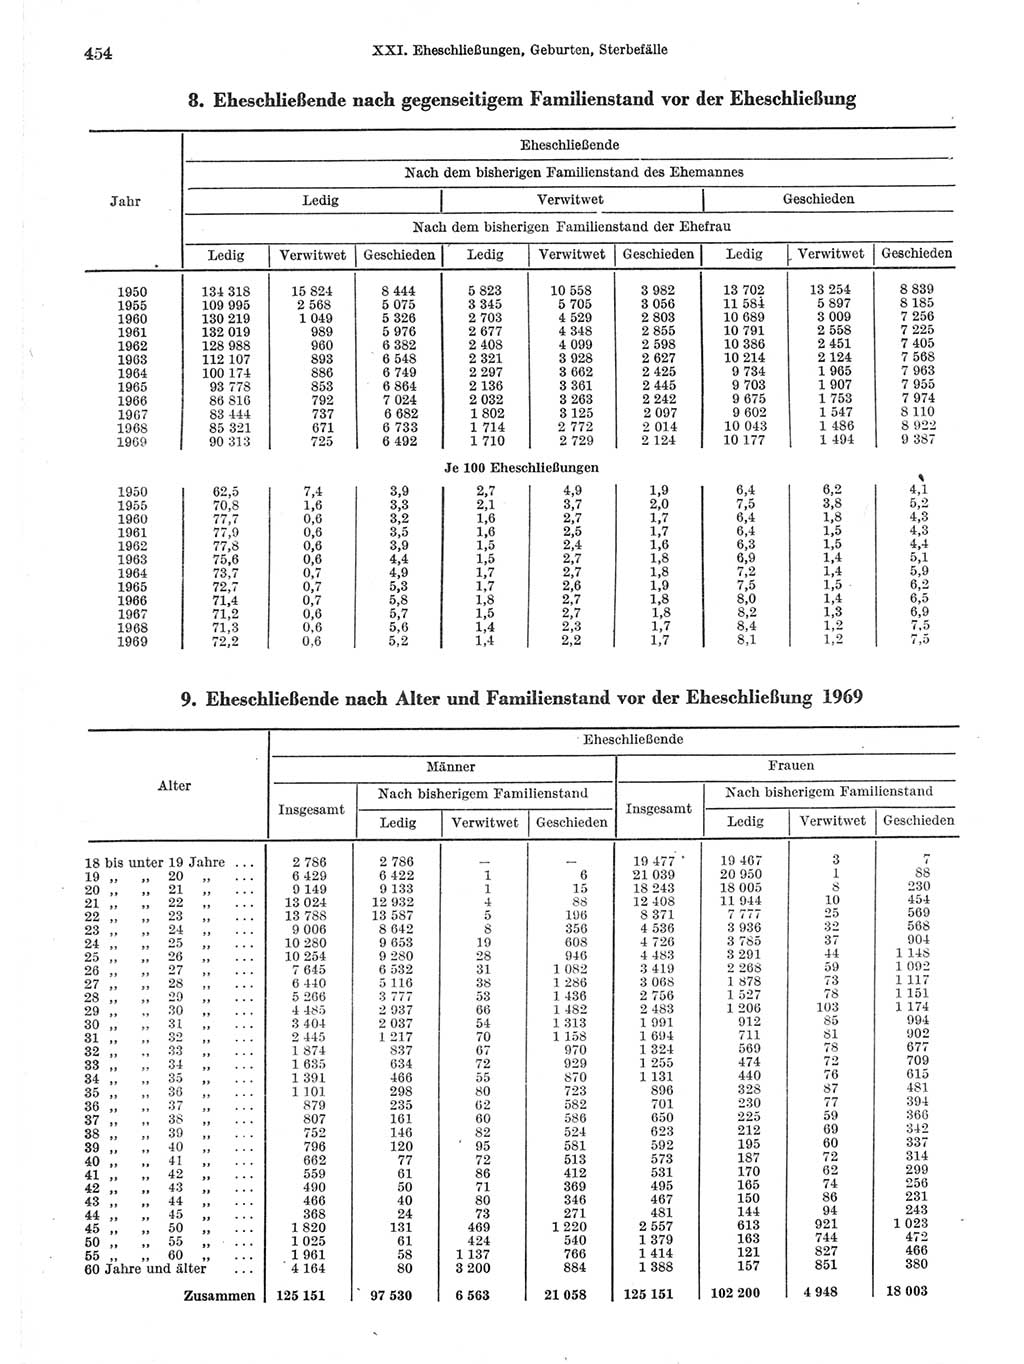 Statistisches Jahrbuch der Deutschen Demokratischen Republik (DDR) 1971, Seite 454 (Stat. Jb. DDR 1971, S. 454)